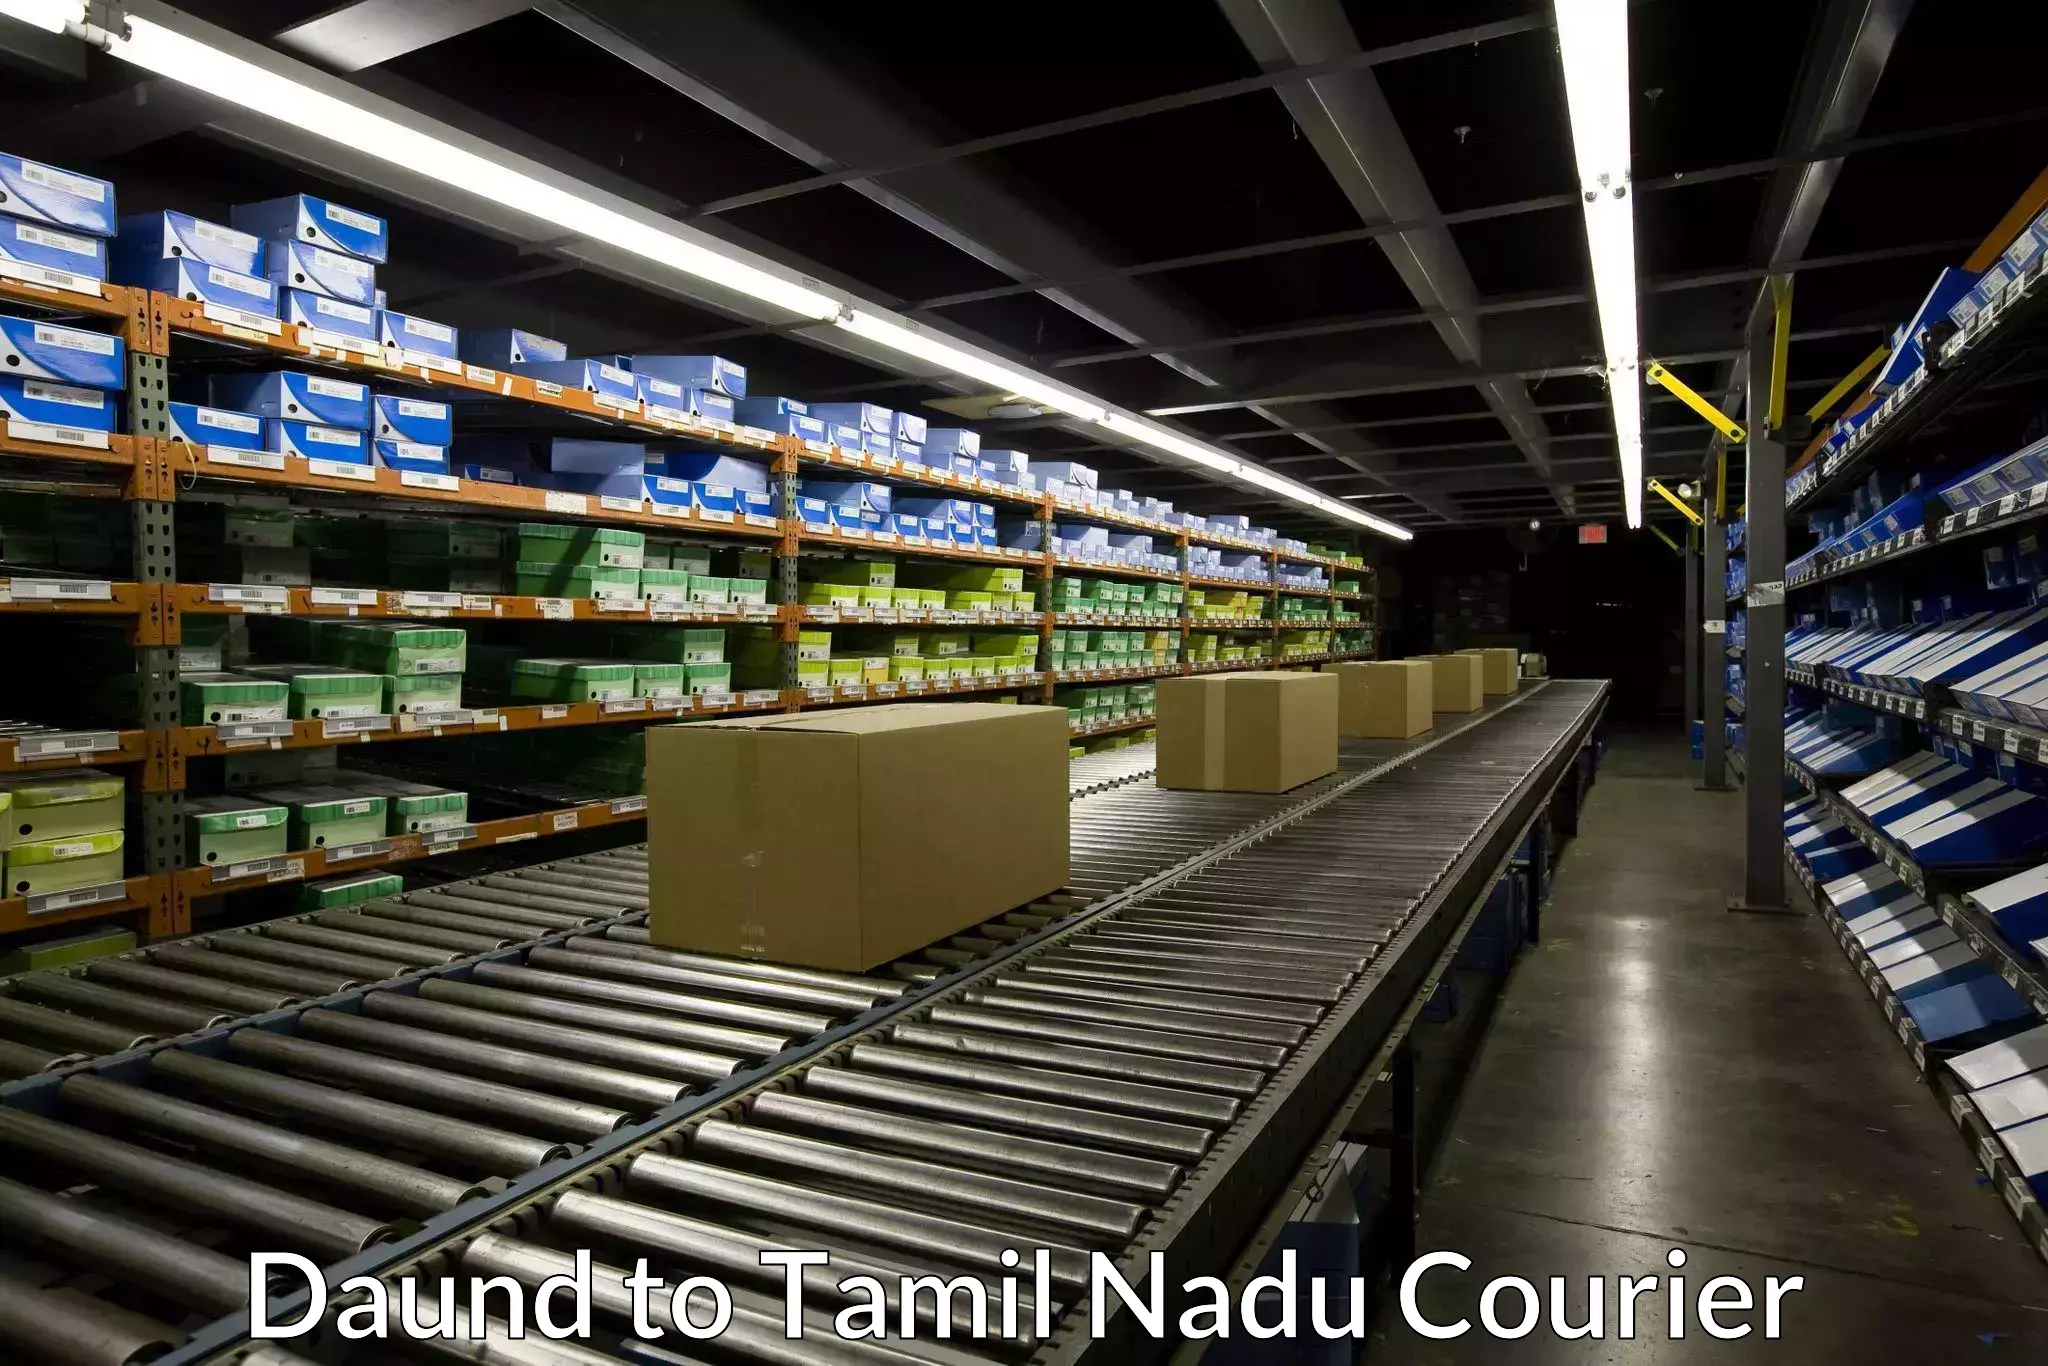 Business shipping needs Daund to Ramanathapuram